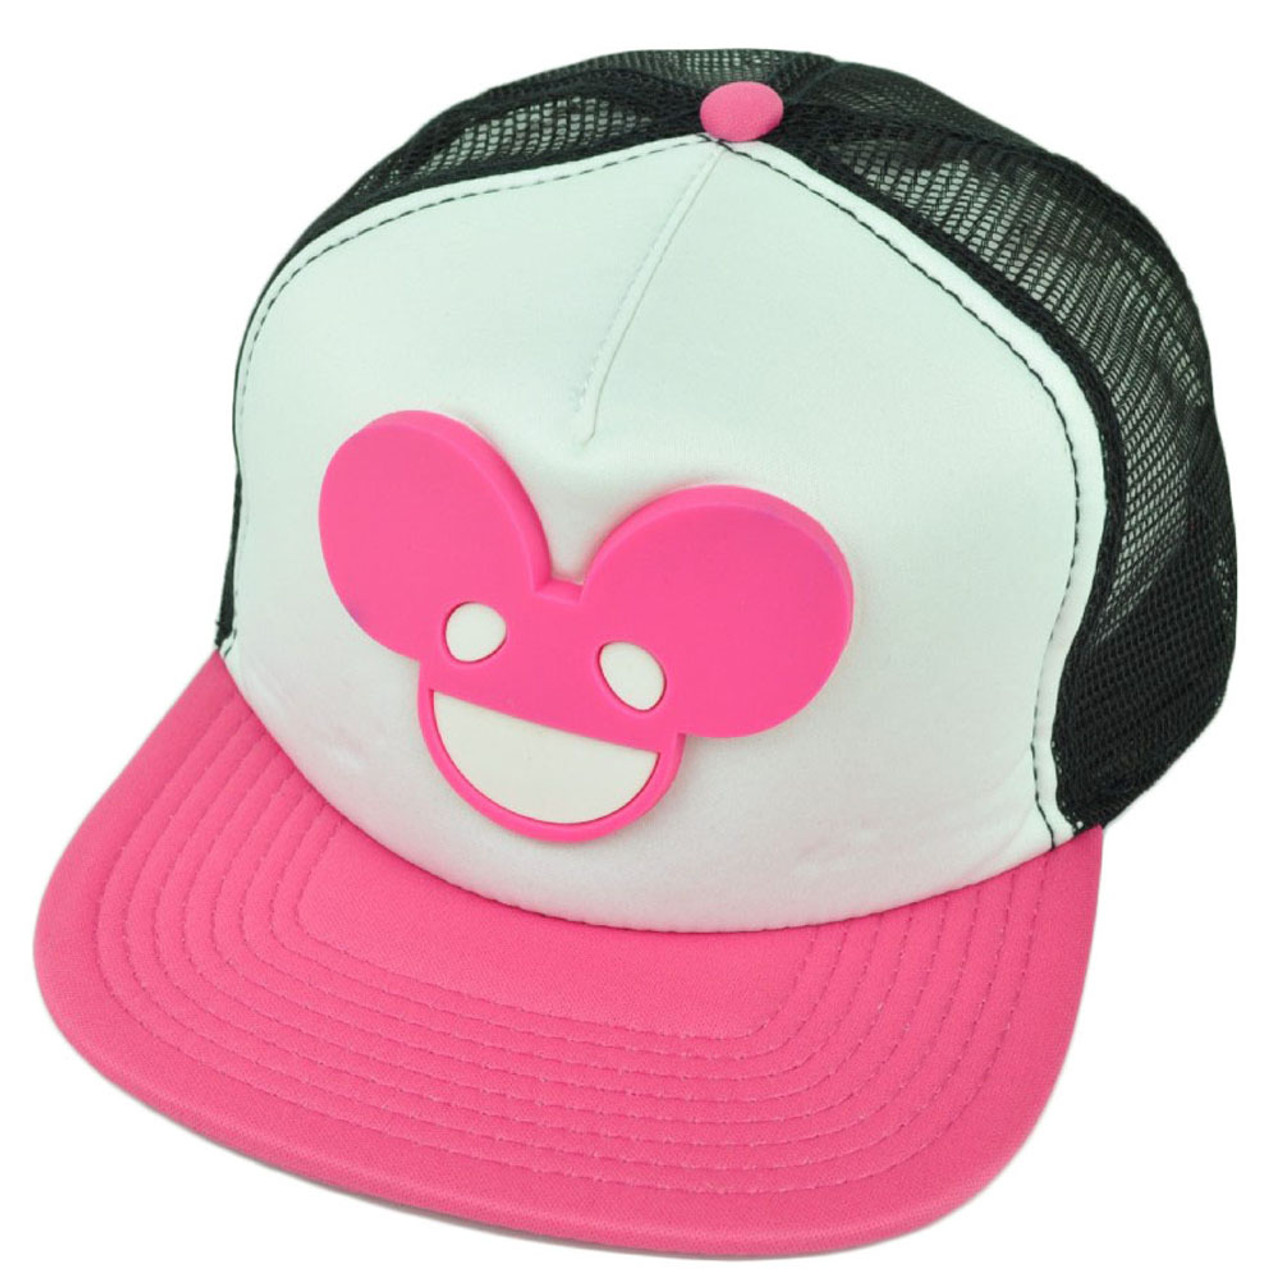 Dj Deadmau5 Dubstep Foam Mesh Neon Pink Edm House Rave Music Snapback Hat Cap Cap Store Online Com